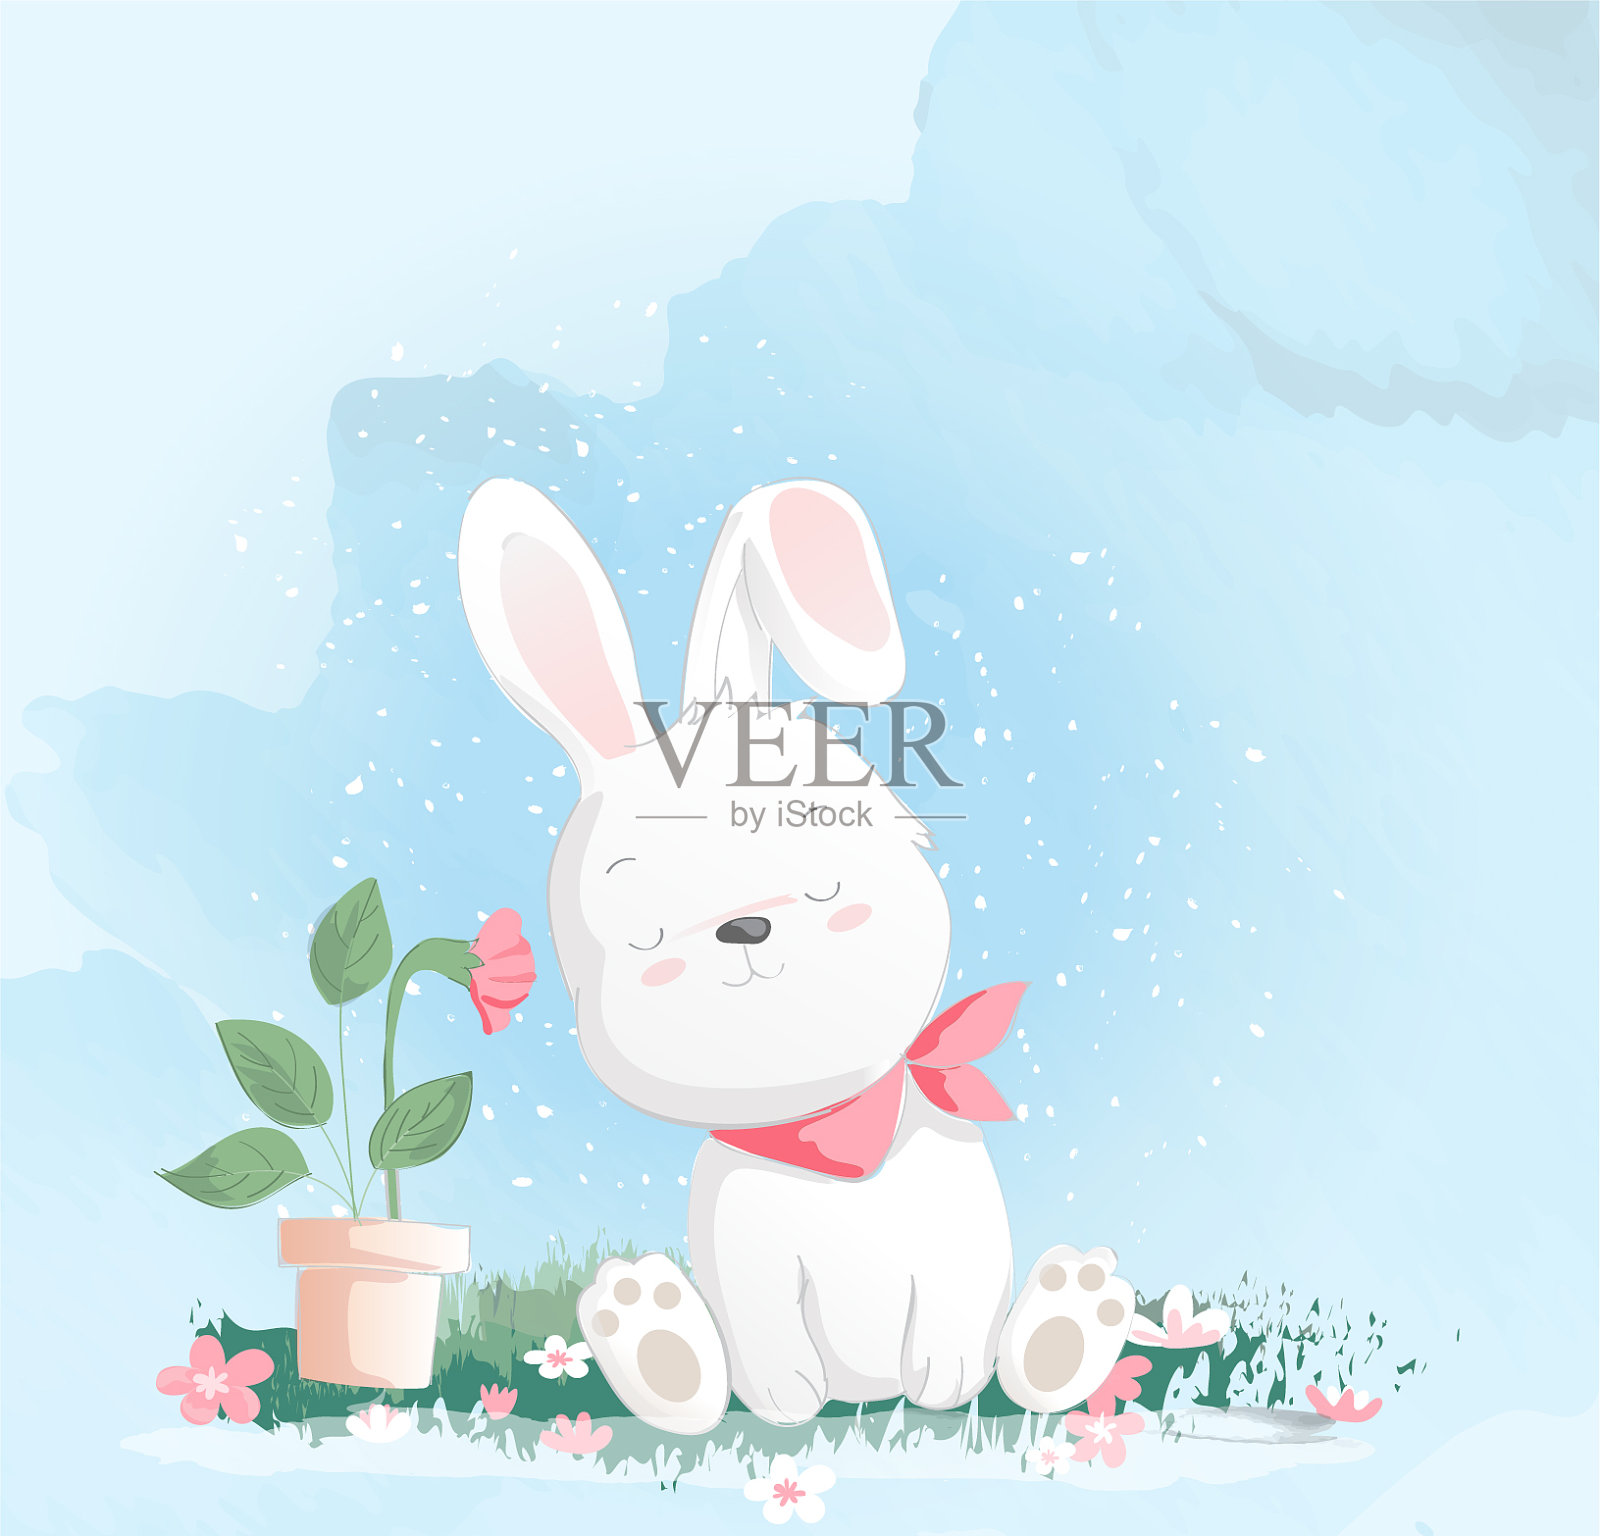 可爱的兔水彩画风格的印刷设计元素图片